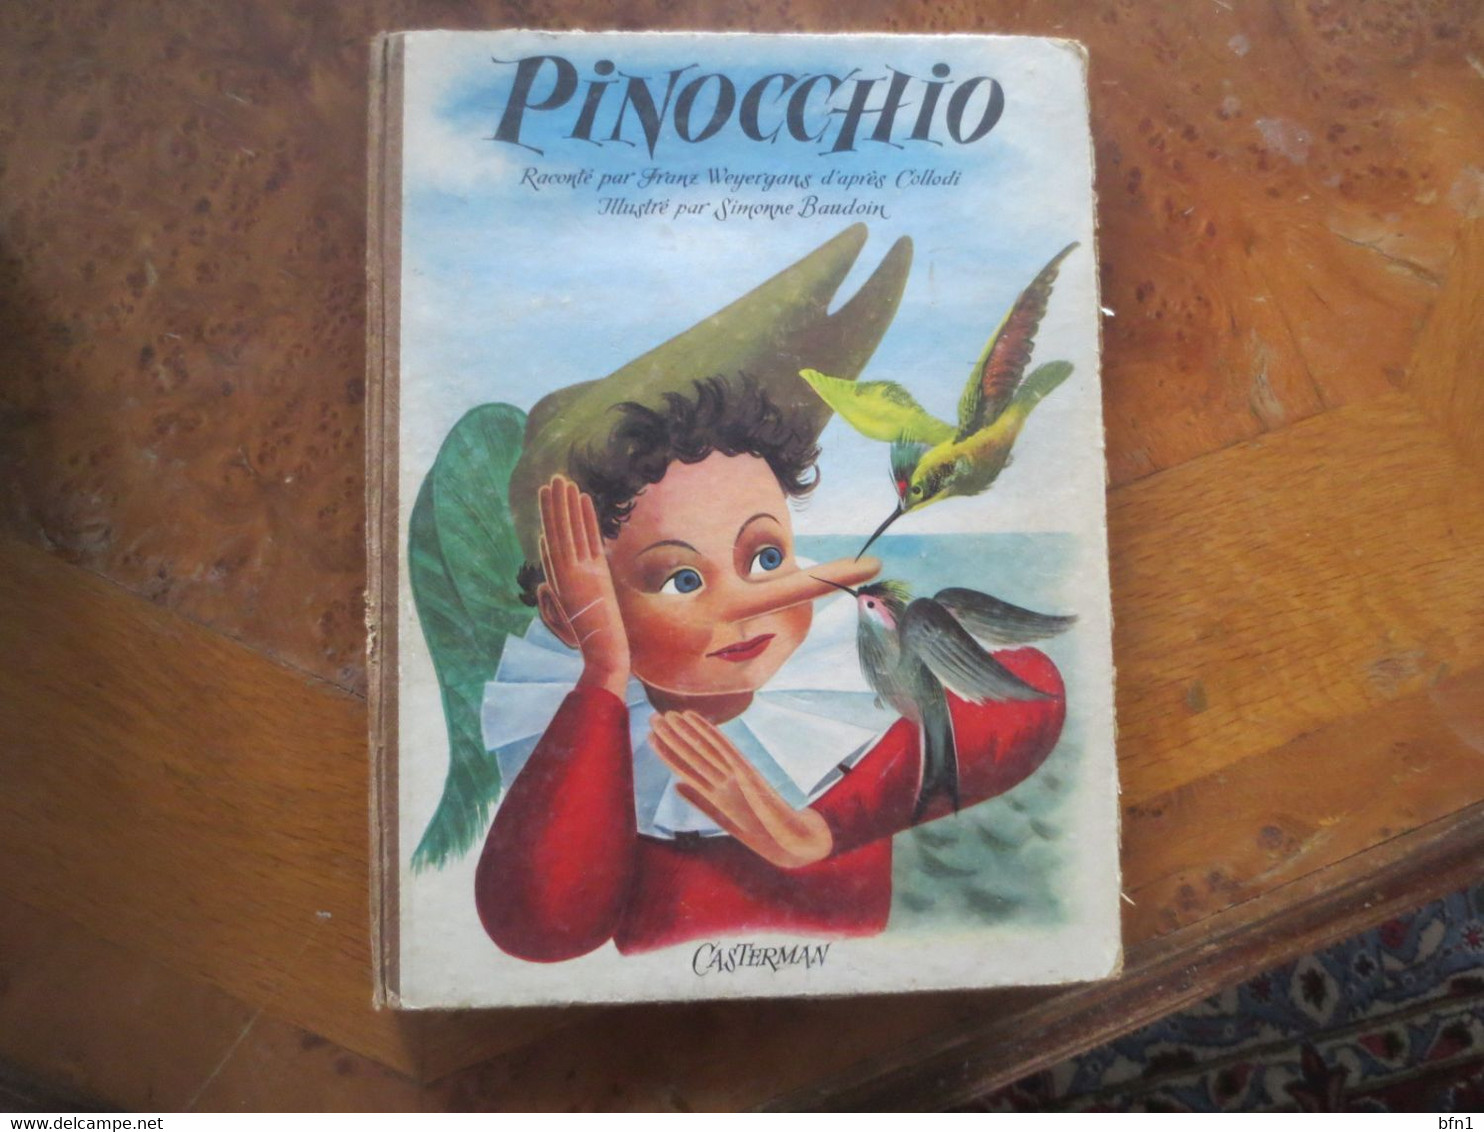 Pinocchio / Casterman 1954 / Toilé / Les Albums De L'age D'or / Collodi -Illustré Par SIMONNE BAUDOIN - Casterman